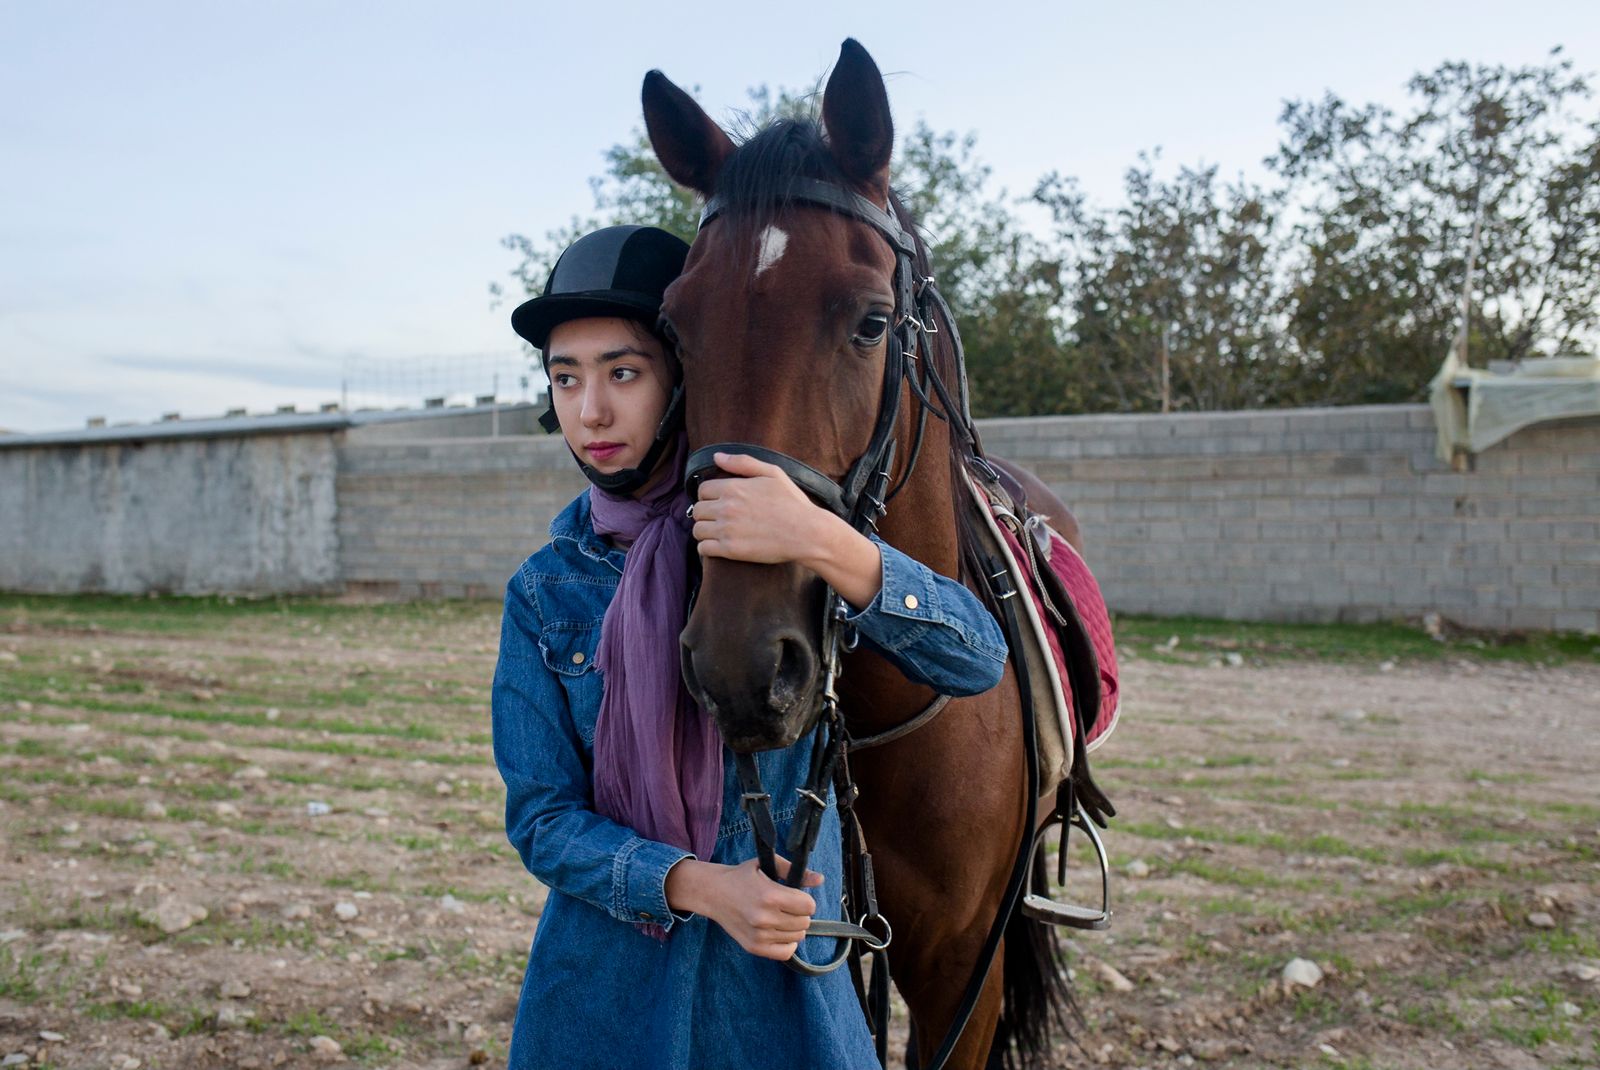 © Parisa Azadi - NOVEMBER 1, 2018 - Kimia Sorkhehmiri takes a break during a horse riding lesson in Ilam, Iran.